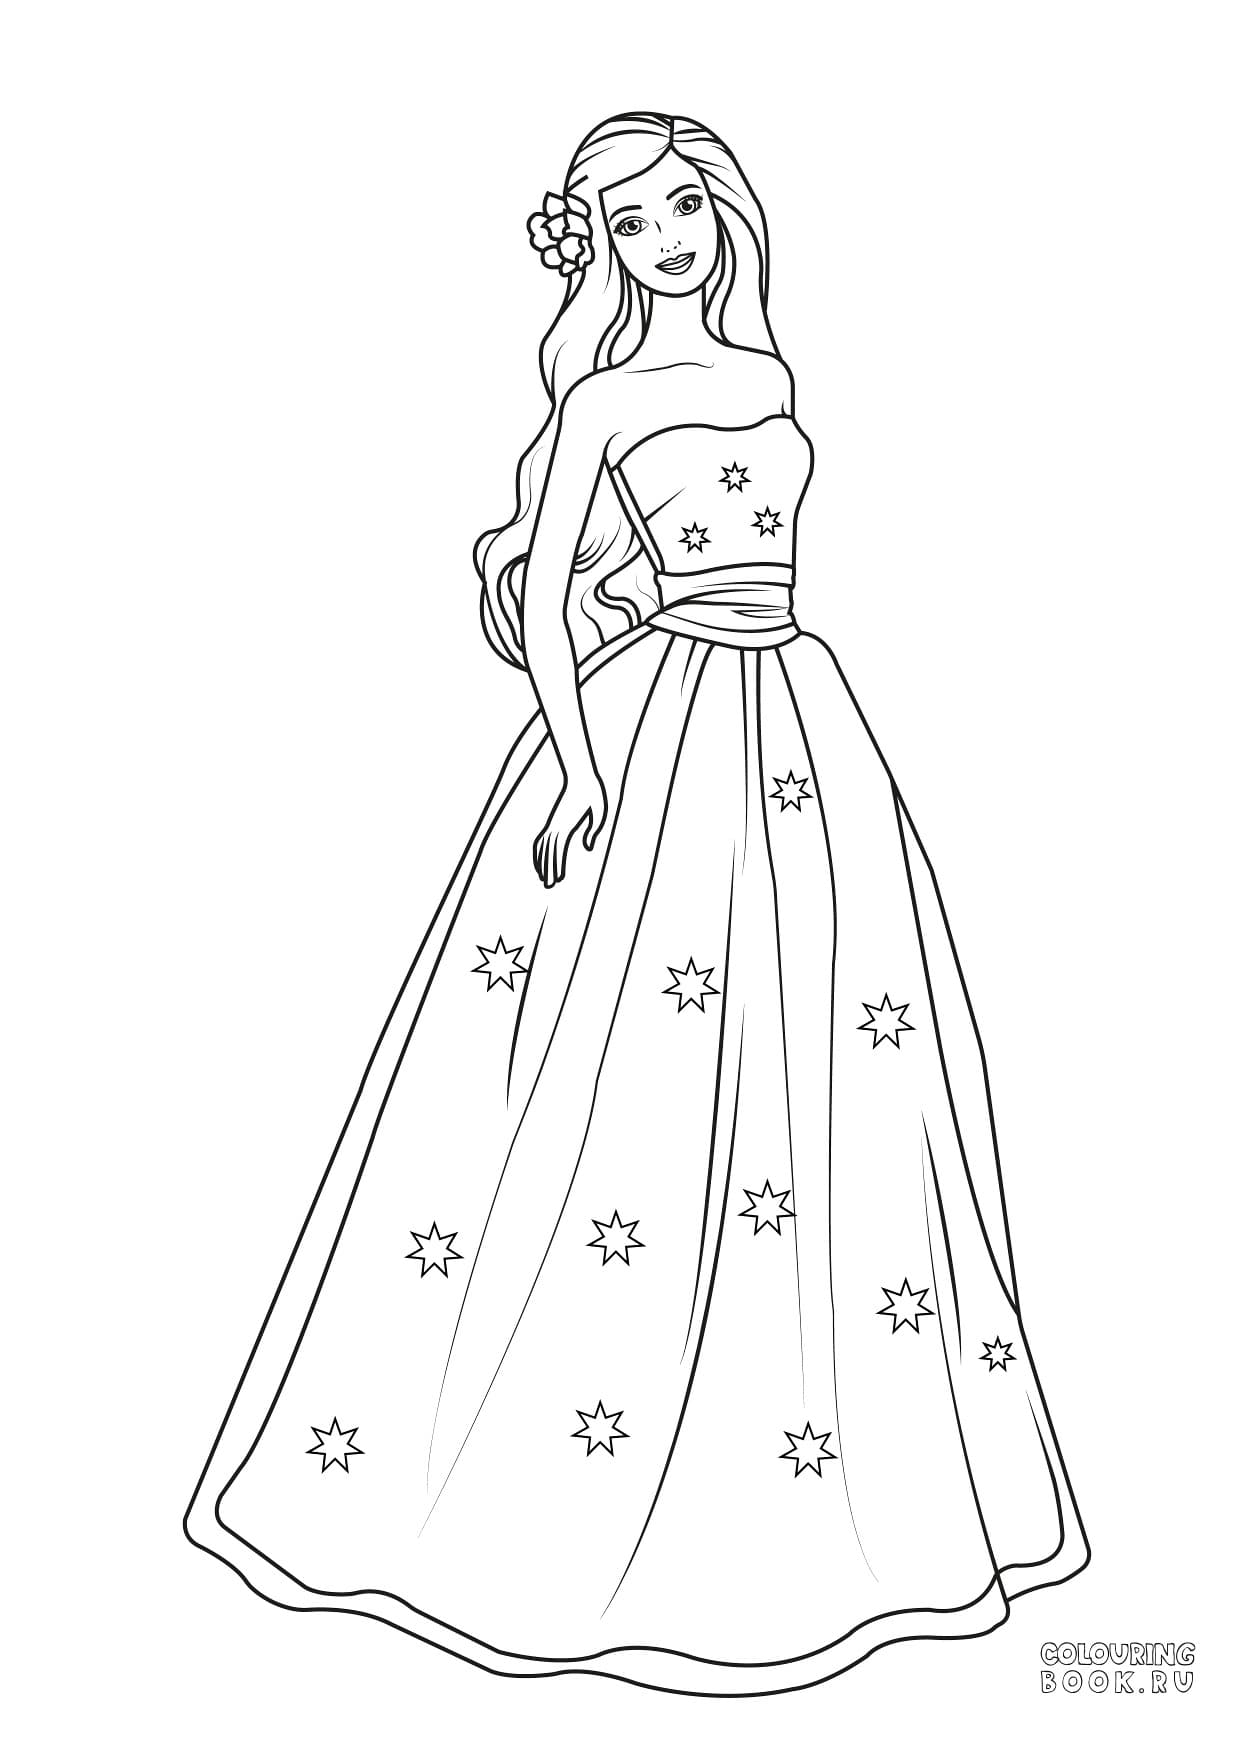 Раскраска Барби принцесса с фруктами на платье